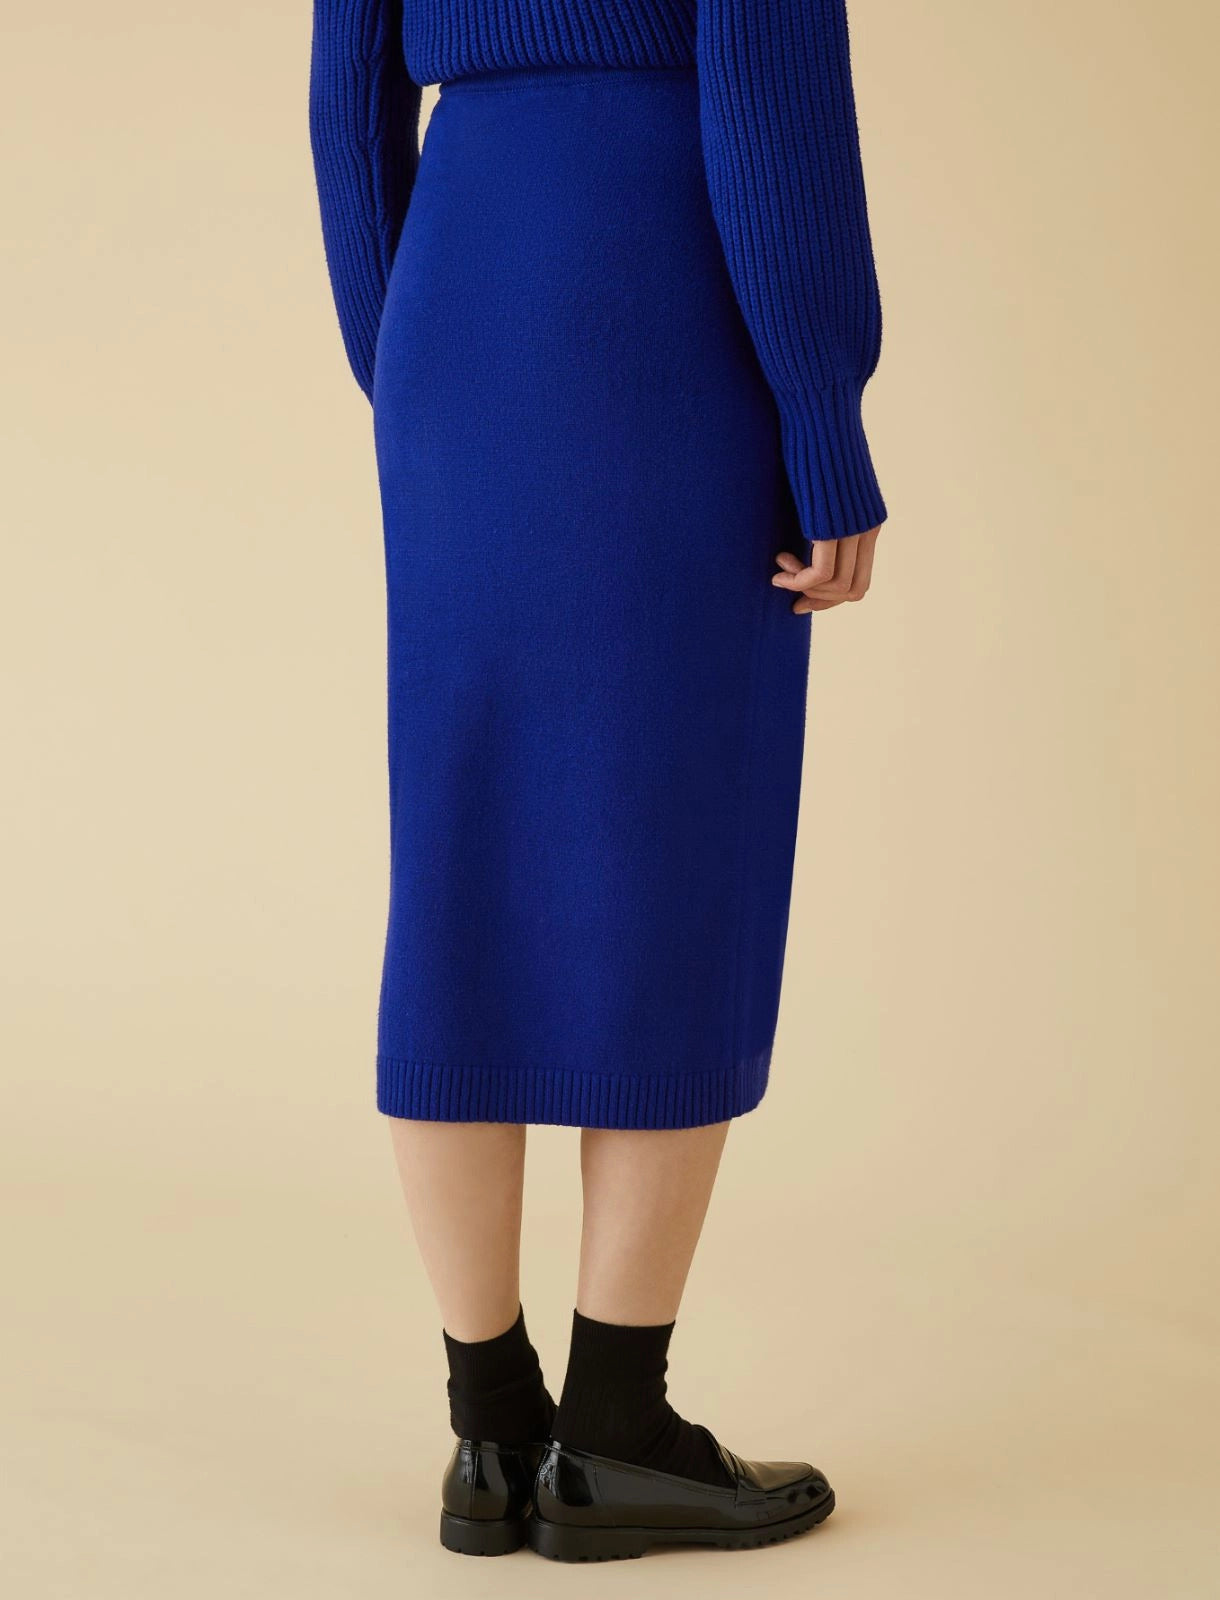 Emme Knit Top & Skirt (2 piece)